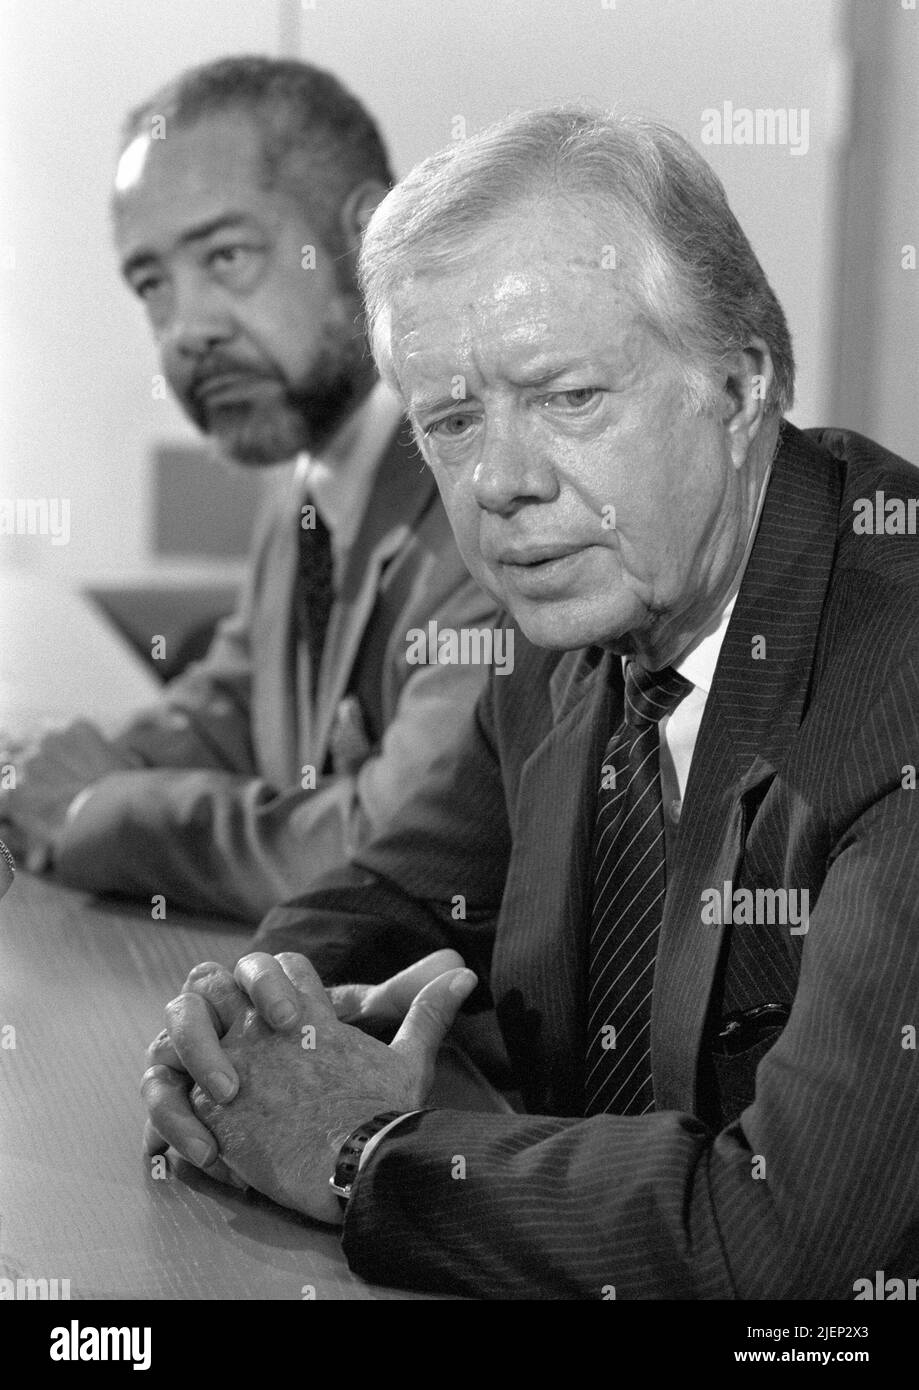 L'ancien président des États-Unis Jimmy carter lors d'une conférence de presse aux pays-Bas à l'aéroport d'Amsterdam Schiphol sur 6 octobre 1988. Banque D'Images